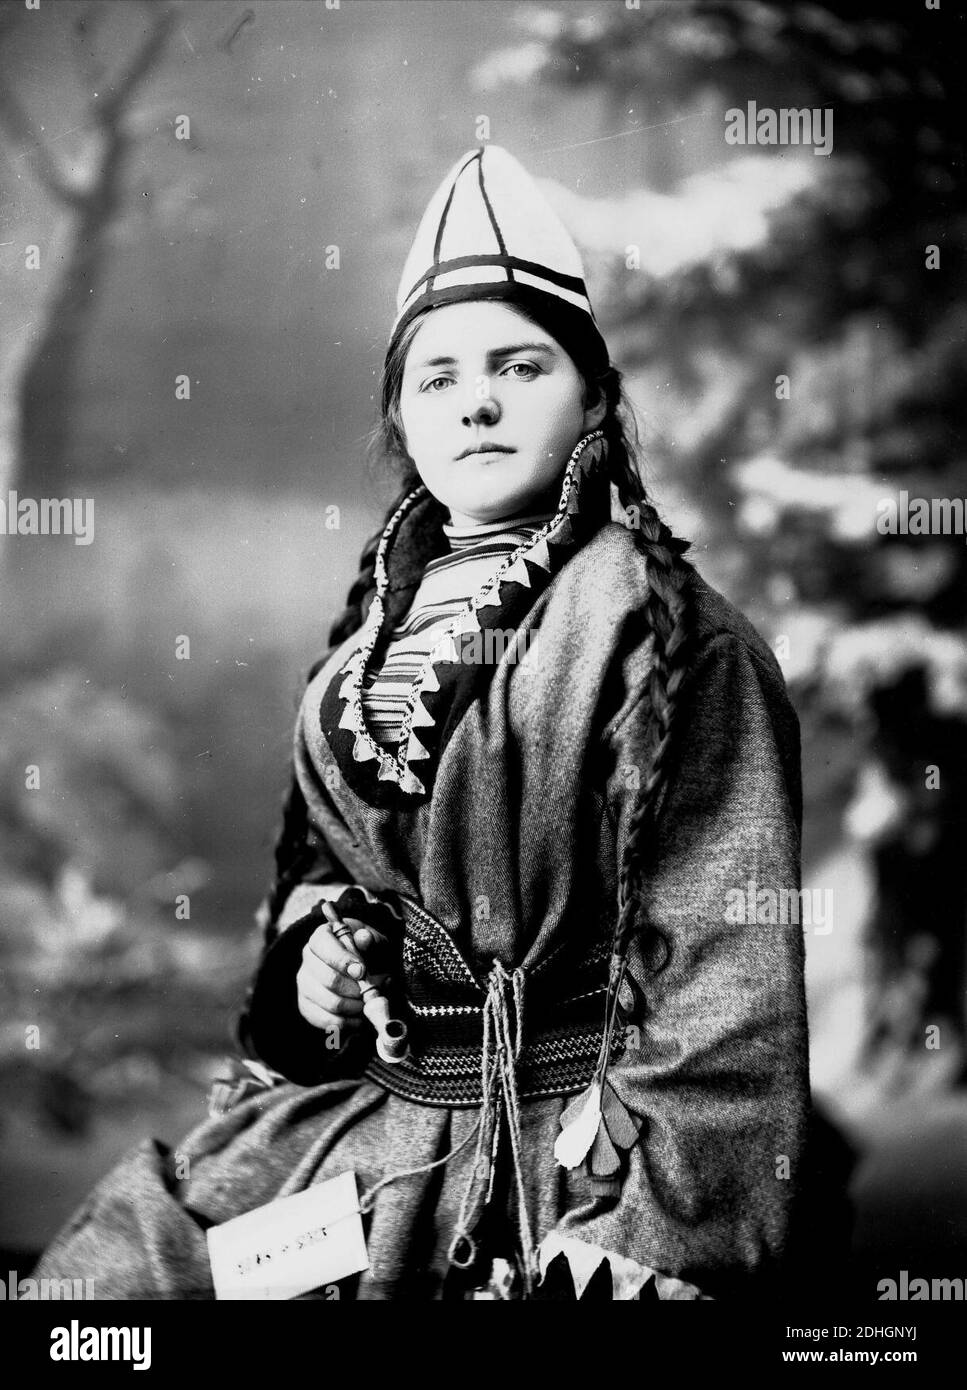 Kvinne i samisk drakt, kofte, lue og nålehus med beltering. I den ene hånden holder hun en pipe Stock Photo